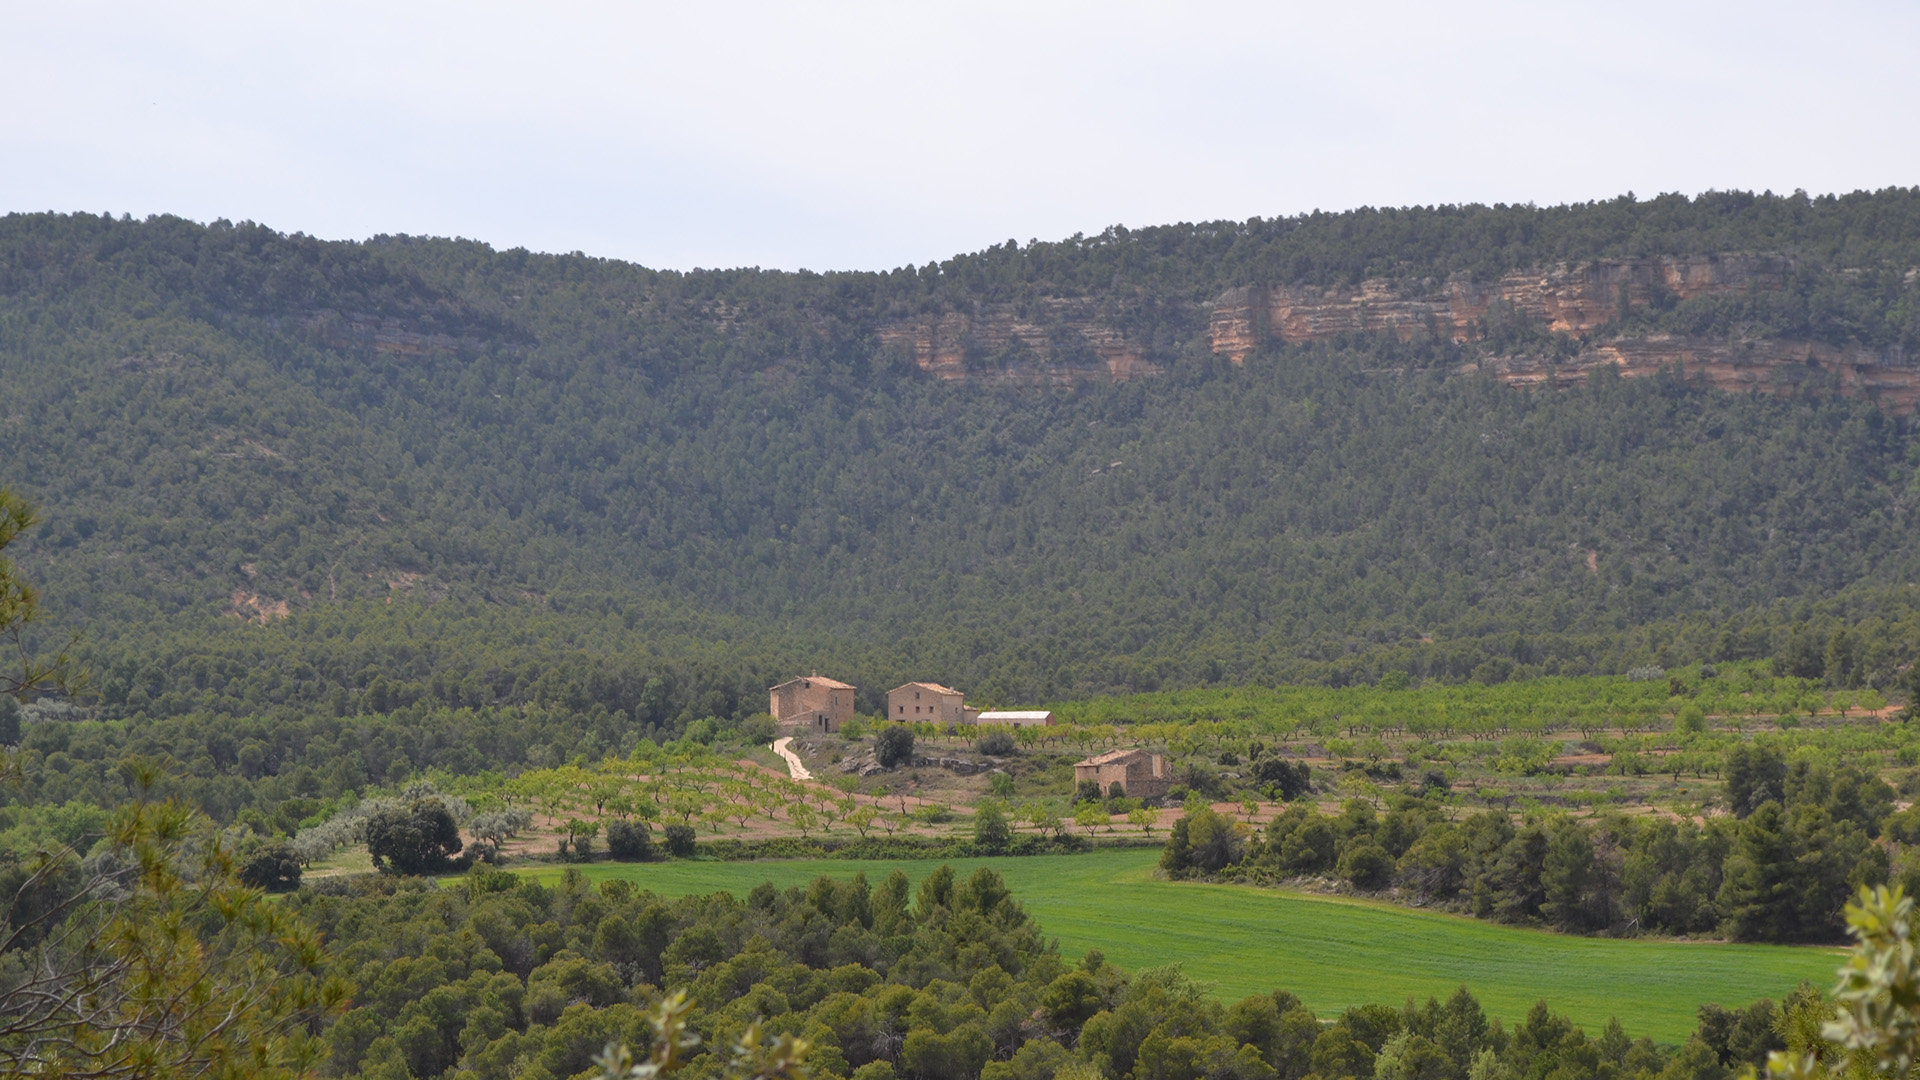 Un paseo entre los olivos y los viñedos de la Toscana española